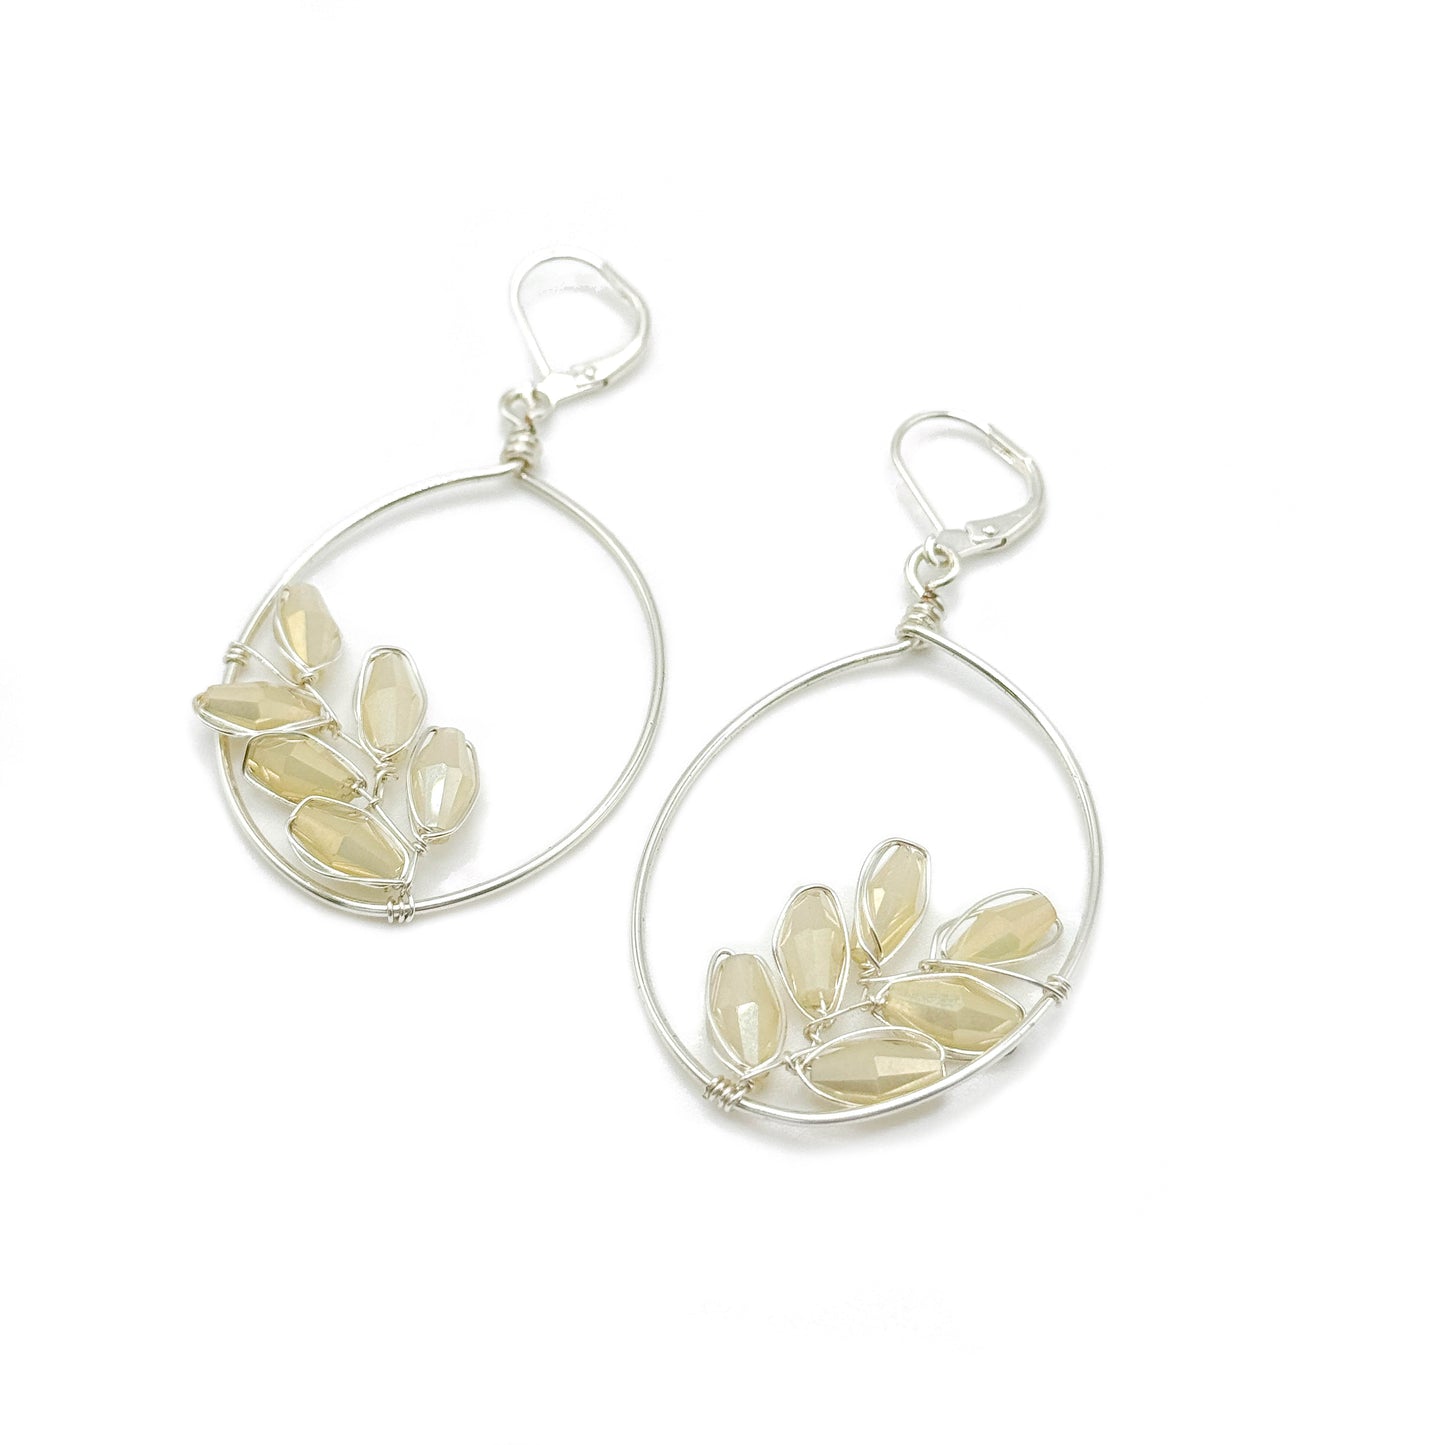 Flourish silver earrings